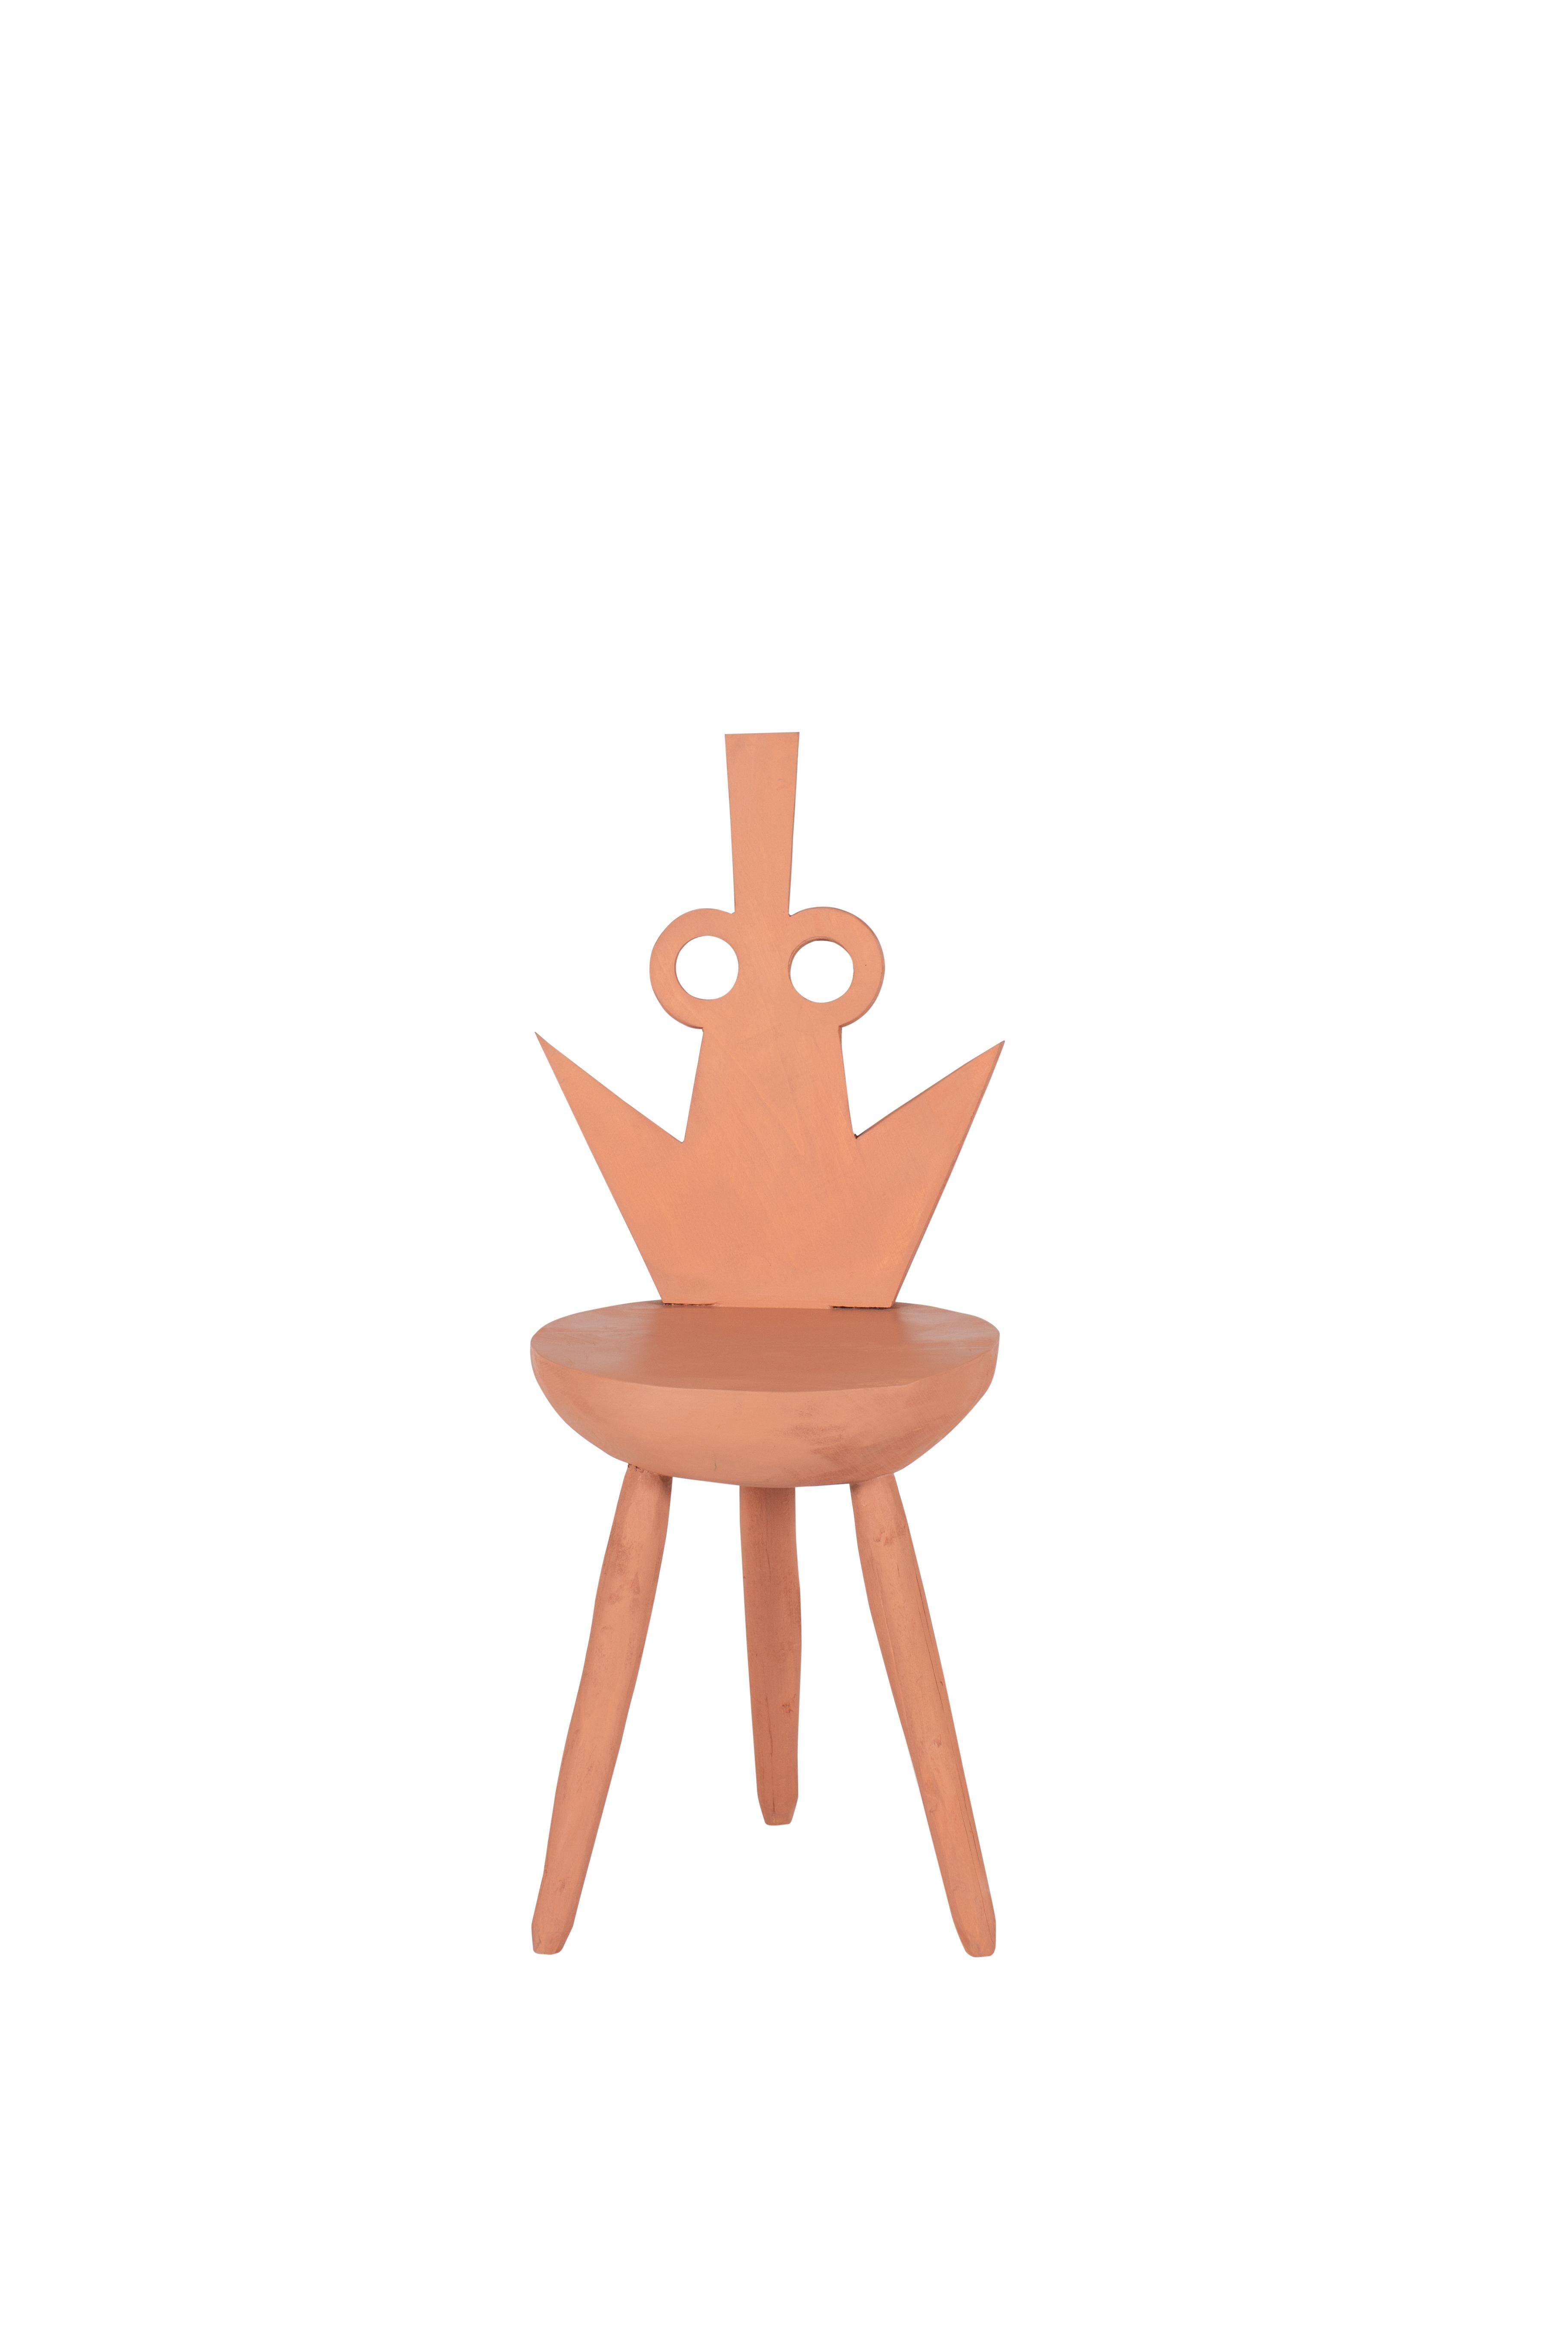 Fester-Rose-Stuhl von Pulpo
Entwurf von Vasilica lsacescu & Nadja Zerunian
Abmessungen: T 39 x B 30 x H 90 cm.
MATERIALIEN: Holz.

Auch in schwarz erhältlich. Bitte kontaktieren Sie uns. 

SCHRECKLICH. WOODY. CRAFT.
Gestatten Sie mir, Fester, Gomez,